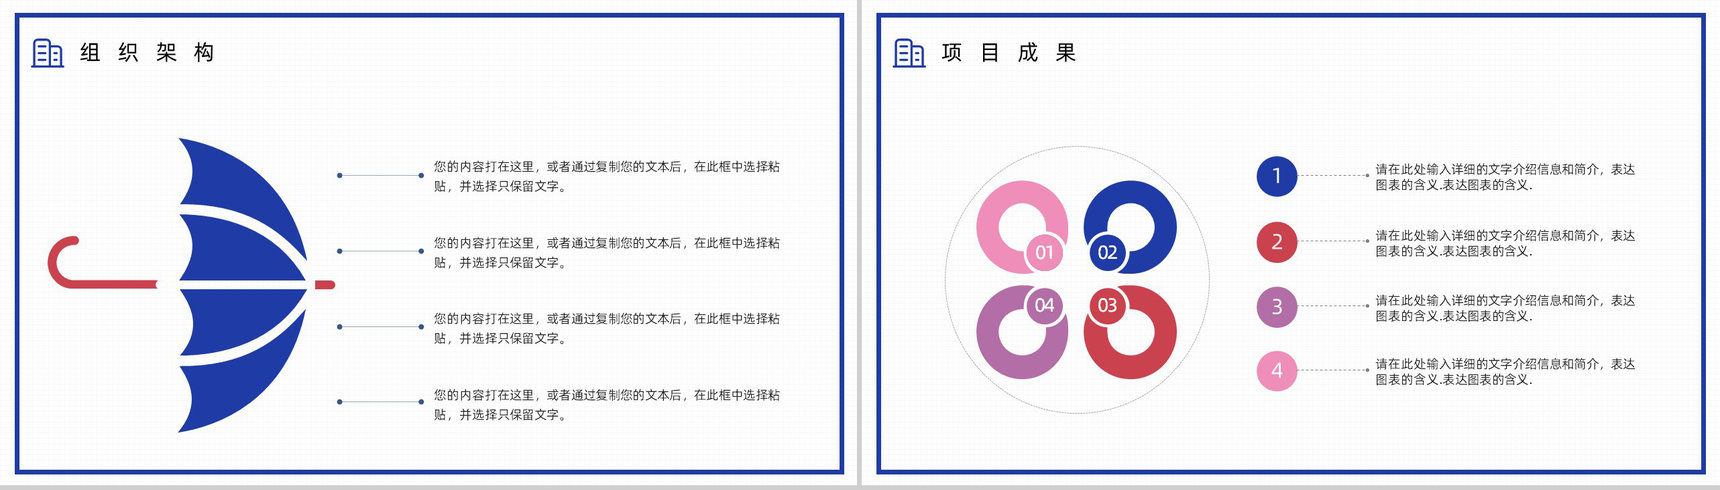 浅紫色简约动画企业文化管理理念活动宣传产品介绍PPT通用模板-6